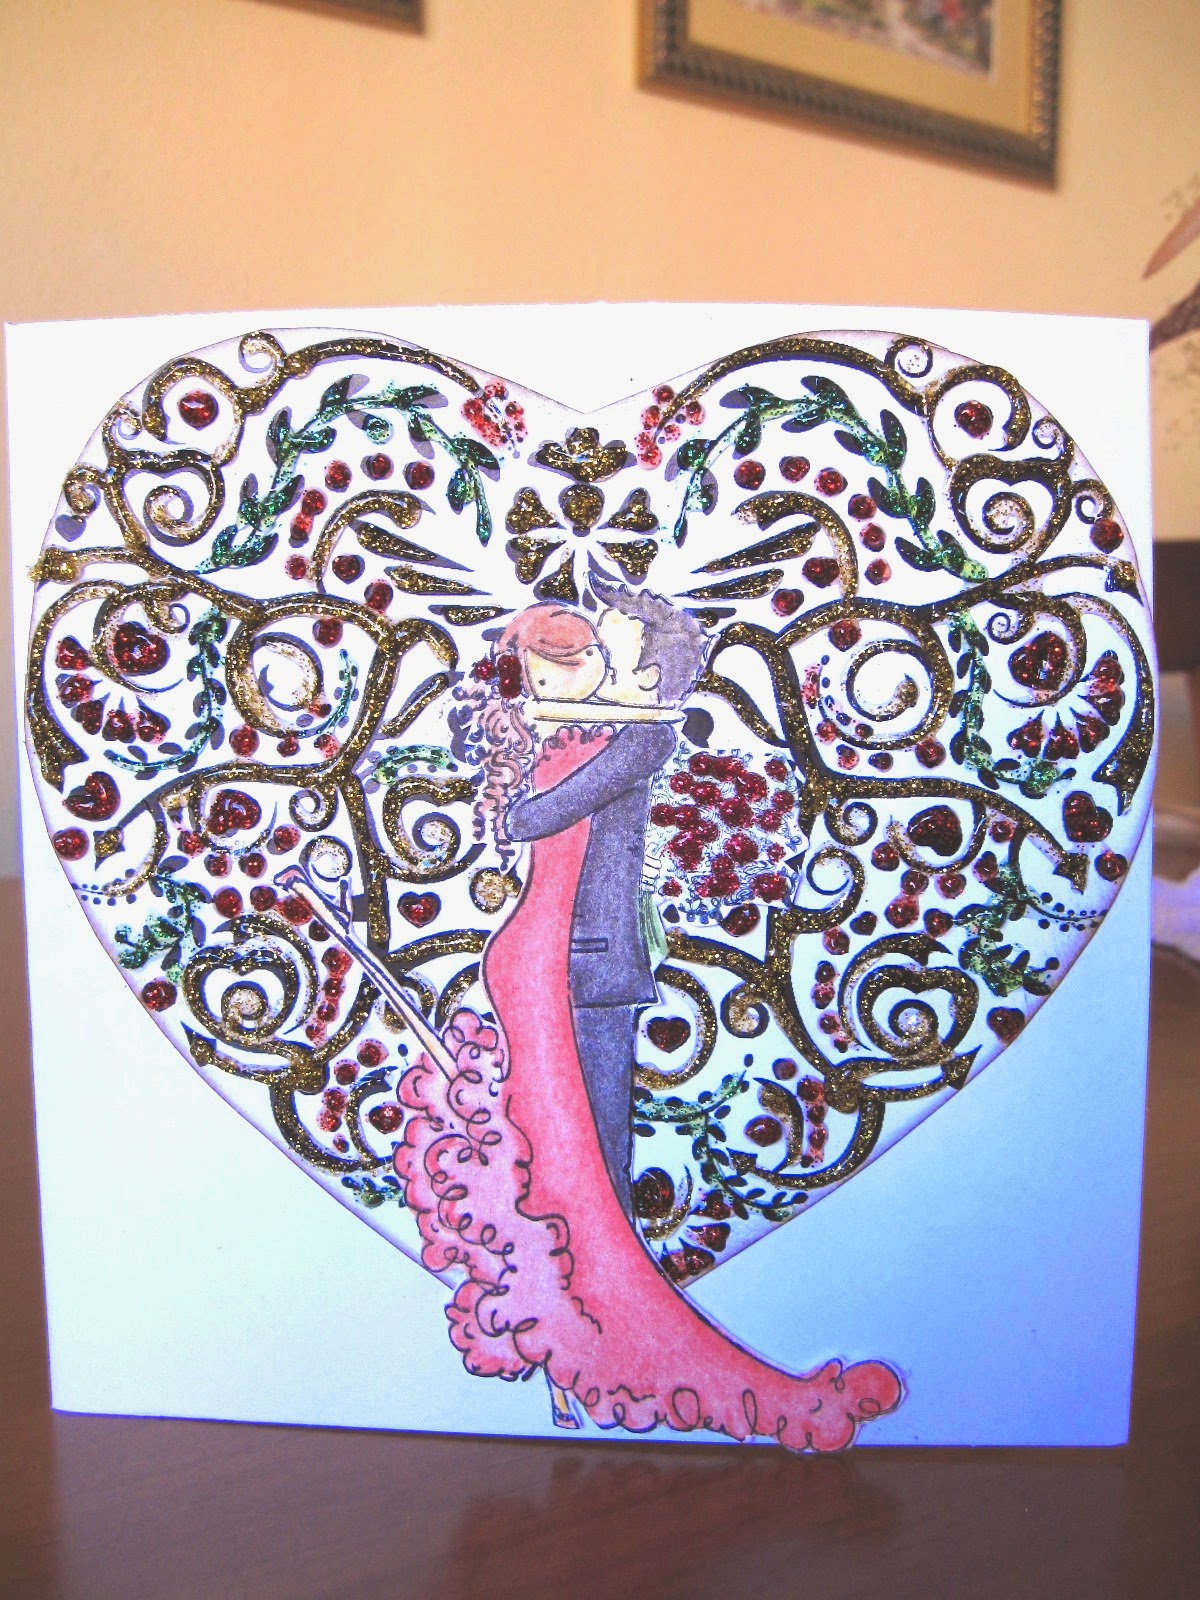  tarjeta de scrapbooking para San Valentín Kiss of Love con una pareja de novios besándose y de fondo un corazón con filigrana resaltada con glitter glue de colores